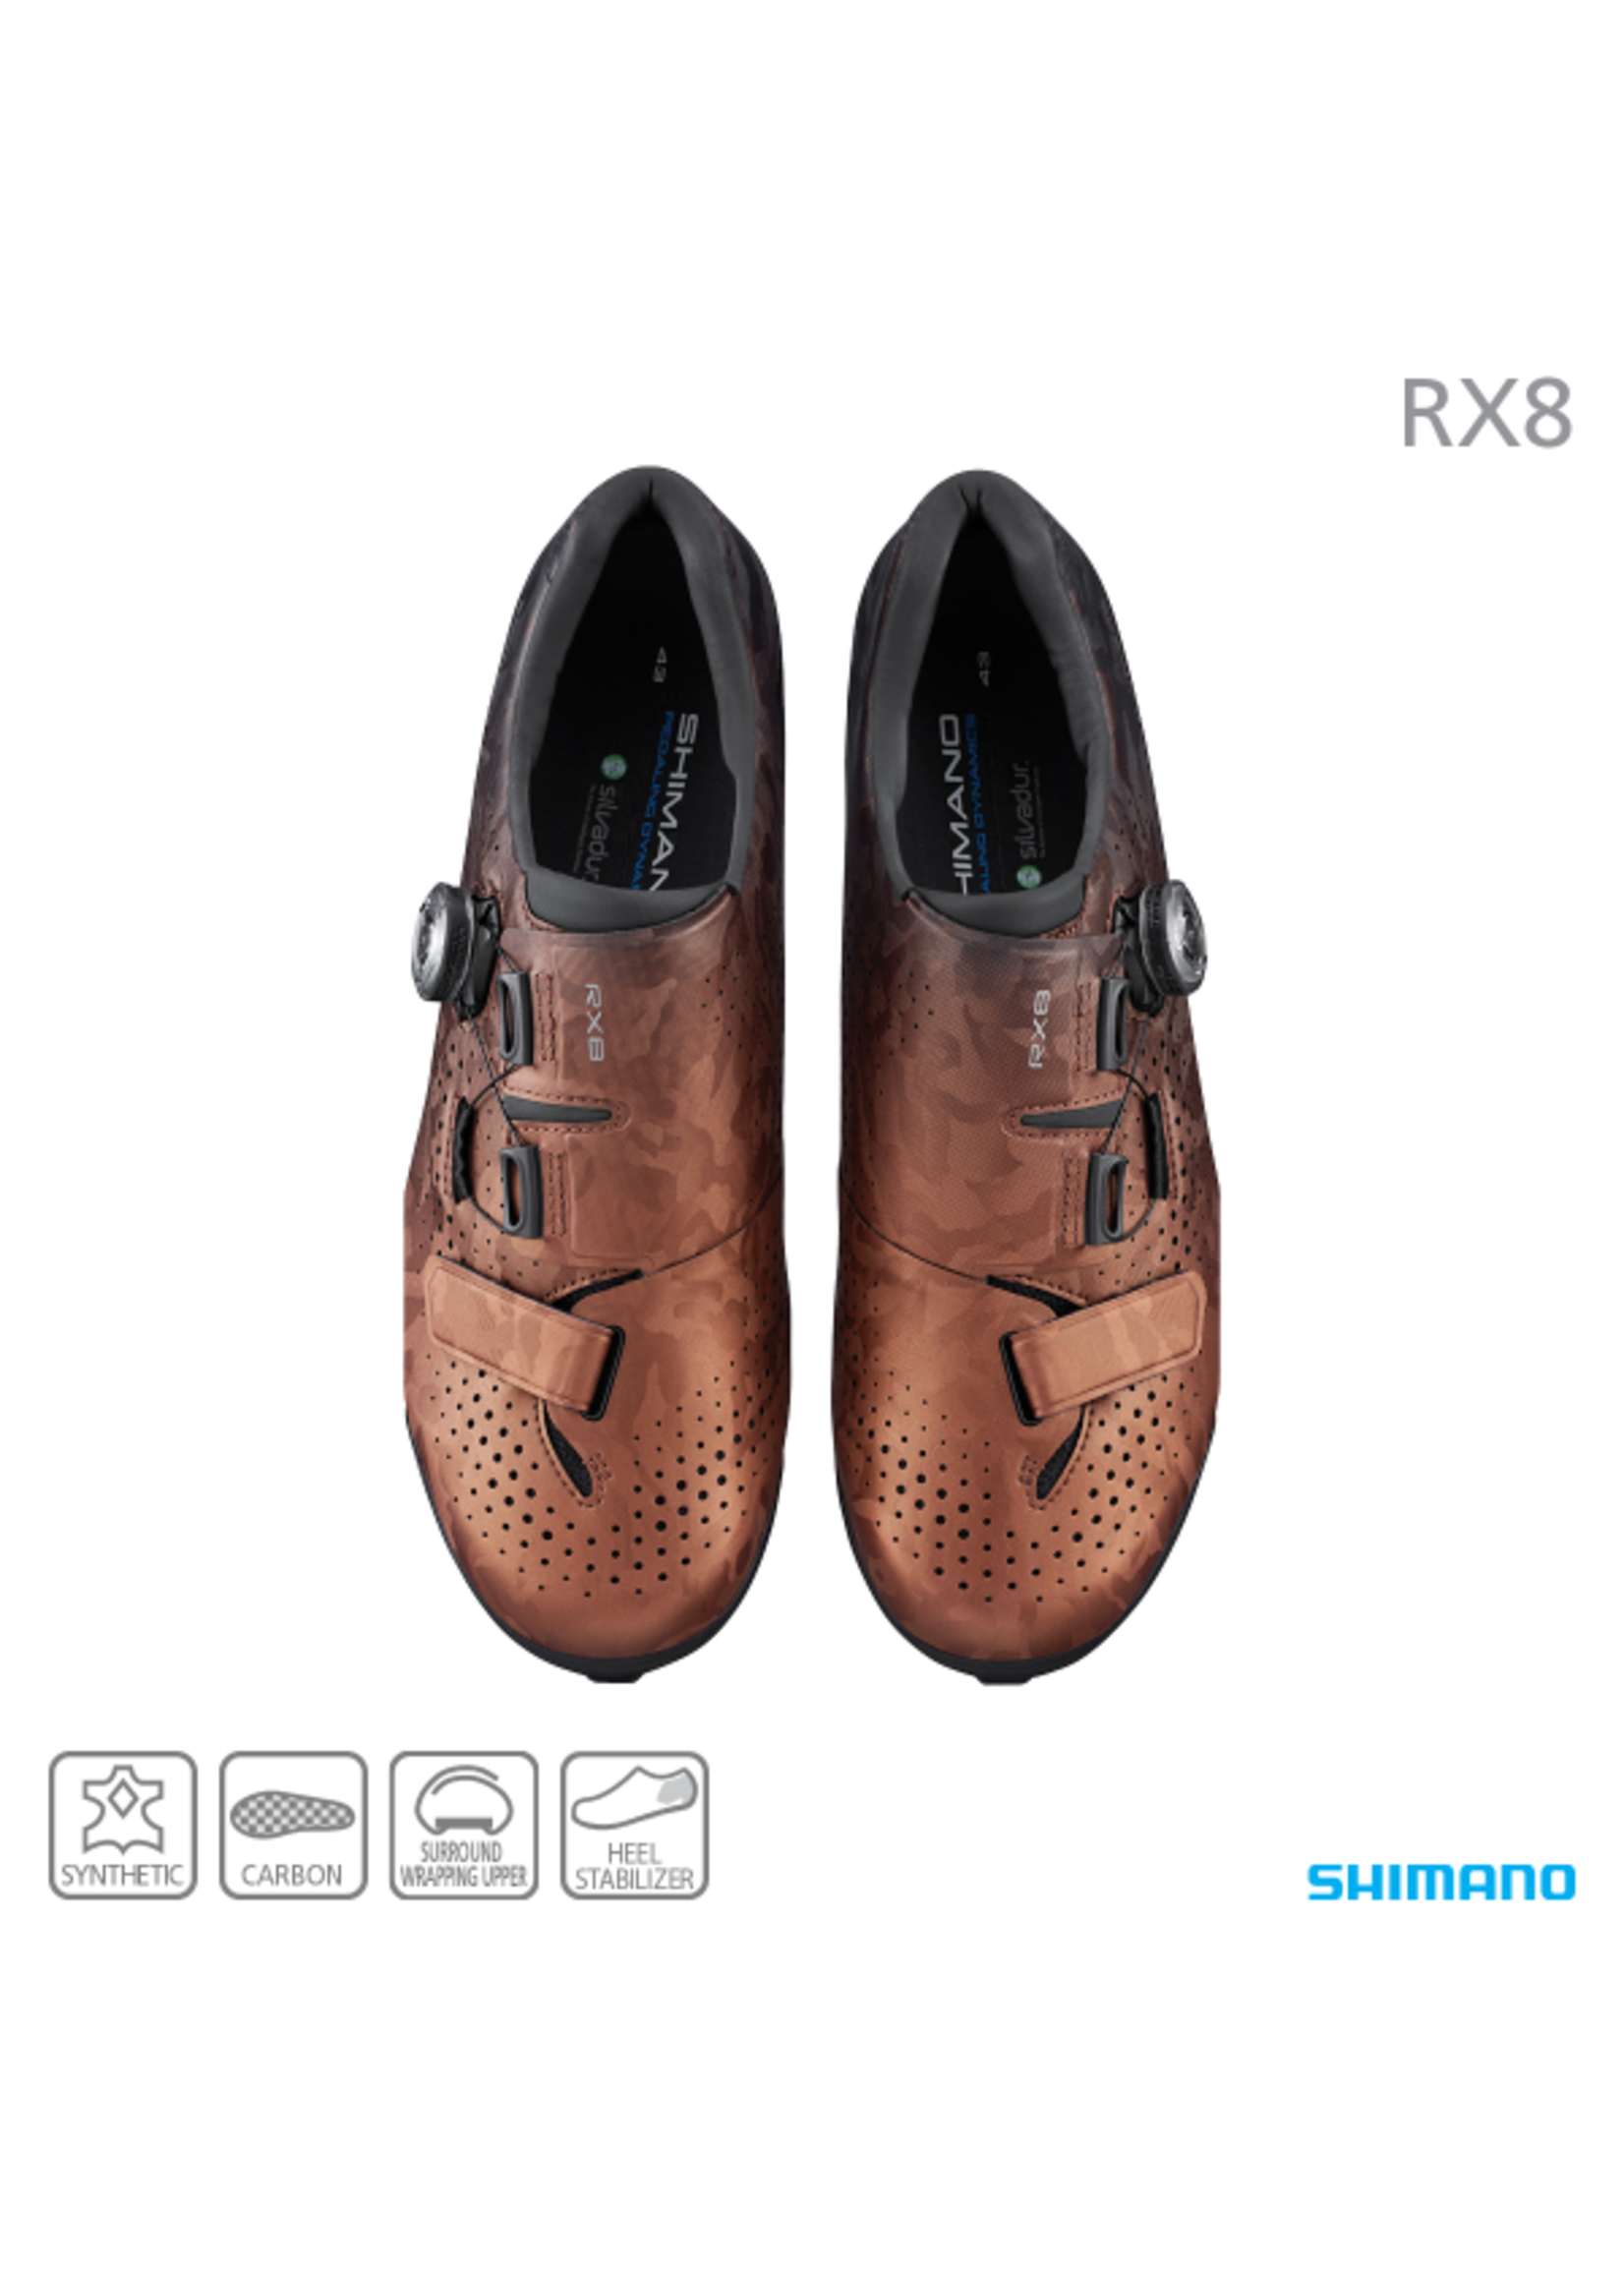 Shimano Shoe Shimano RX8